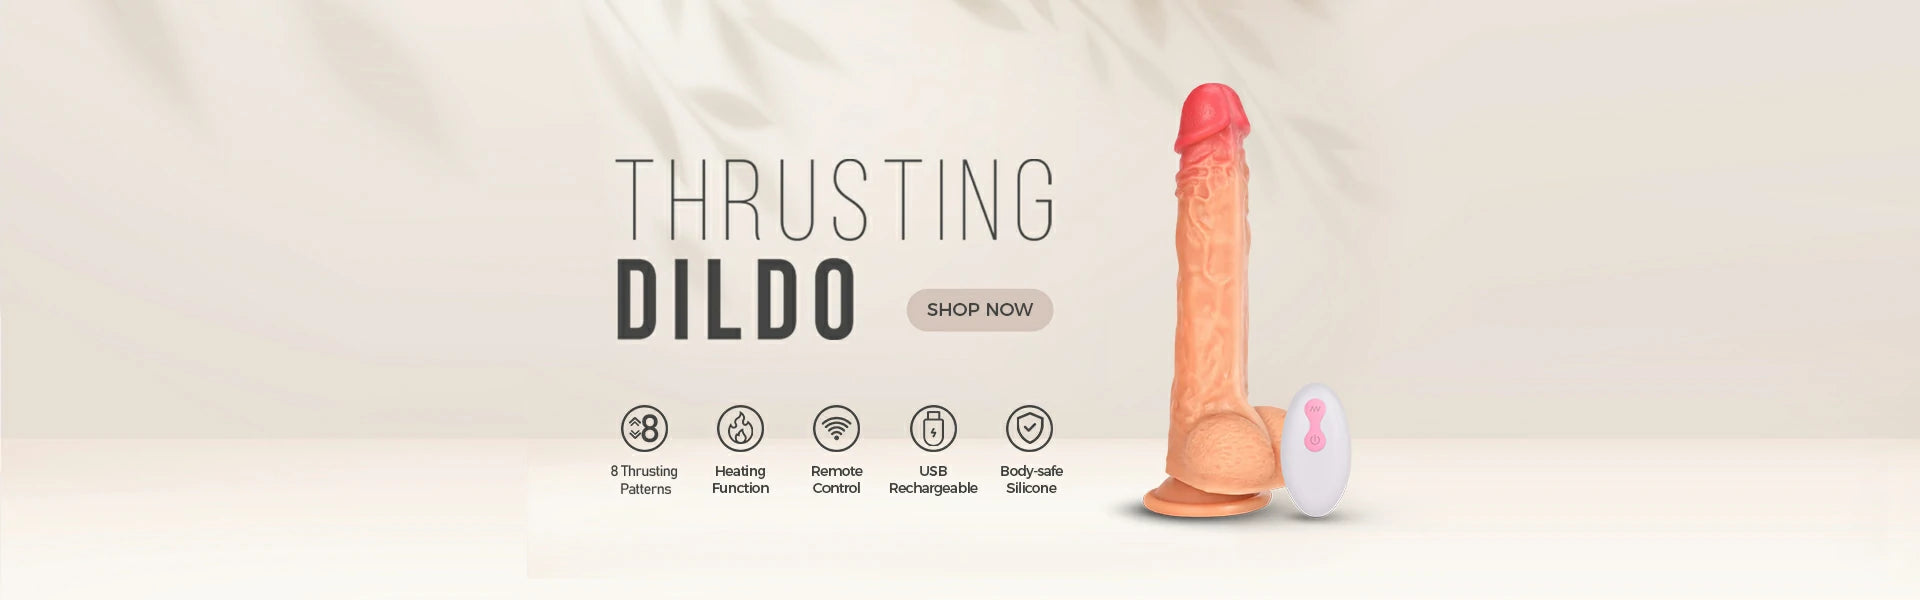 thrusting dildo banner desktop